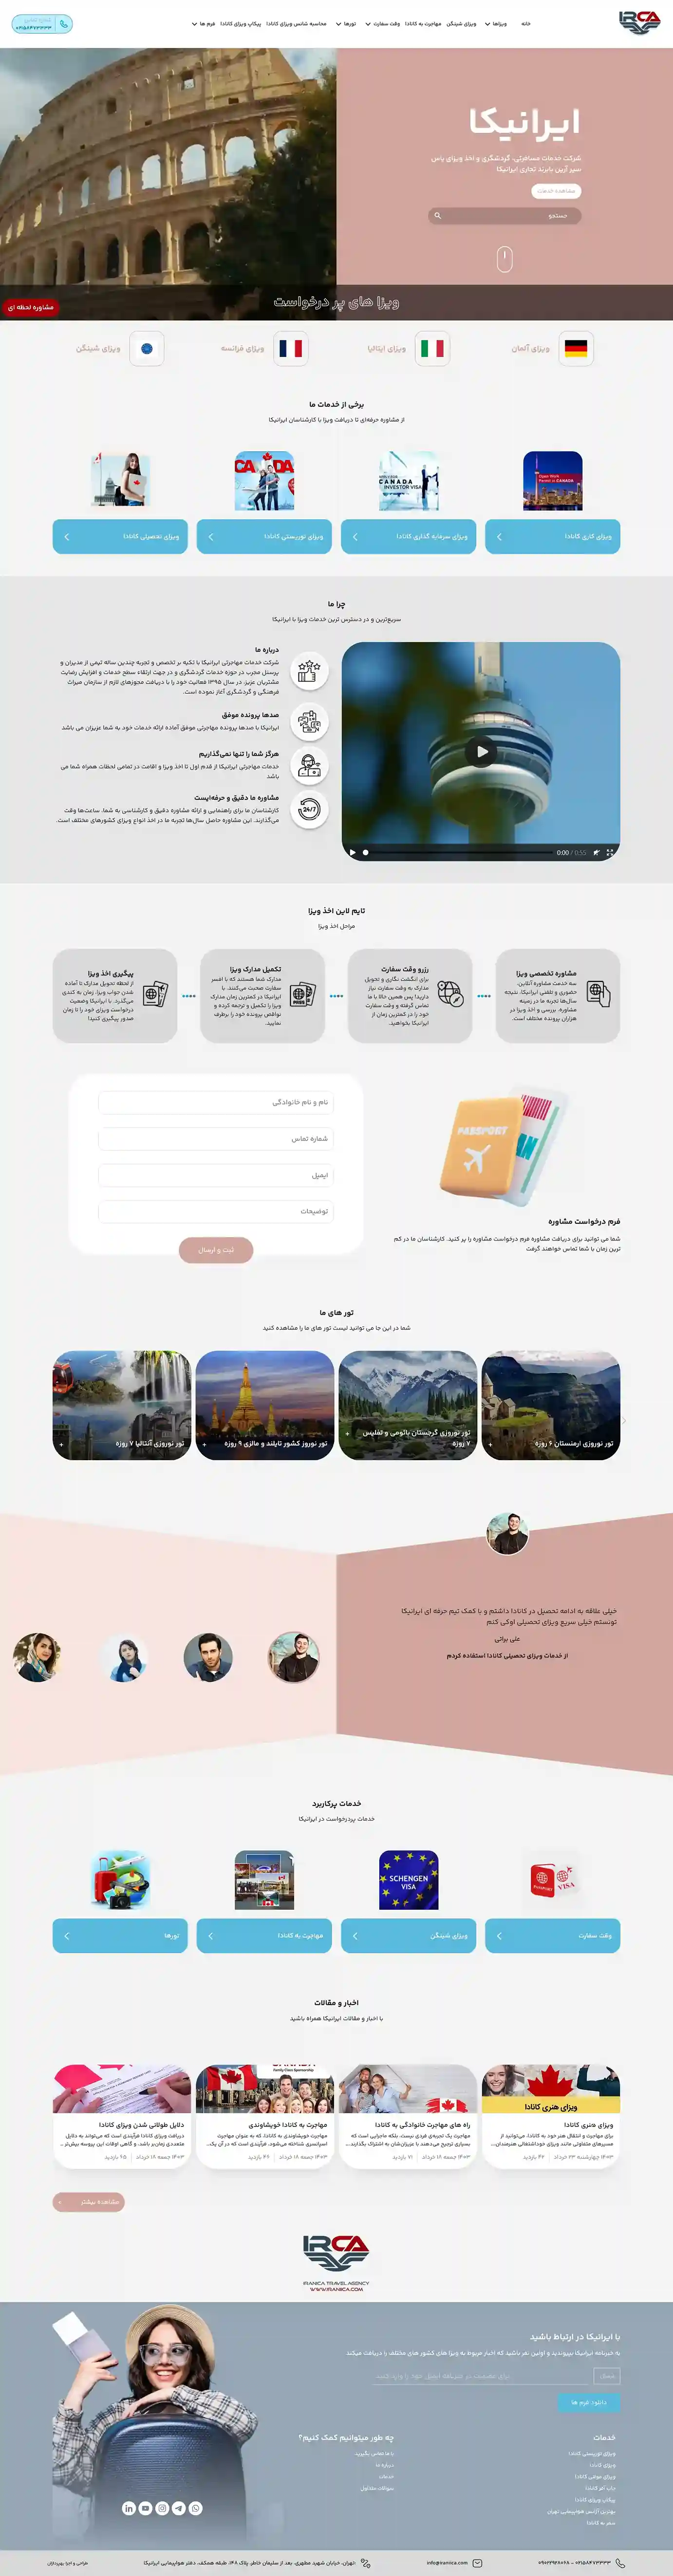 طراحی سایت گردشگری ایرانیکا